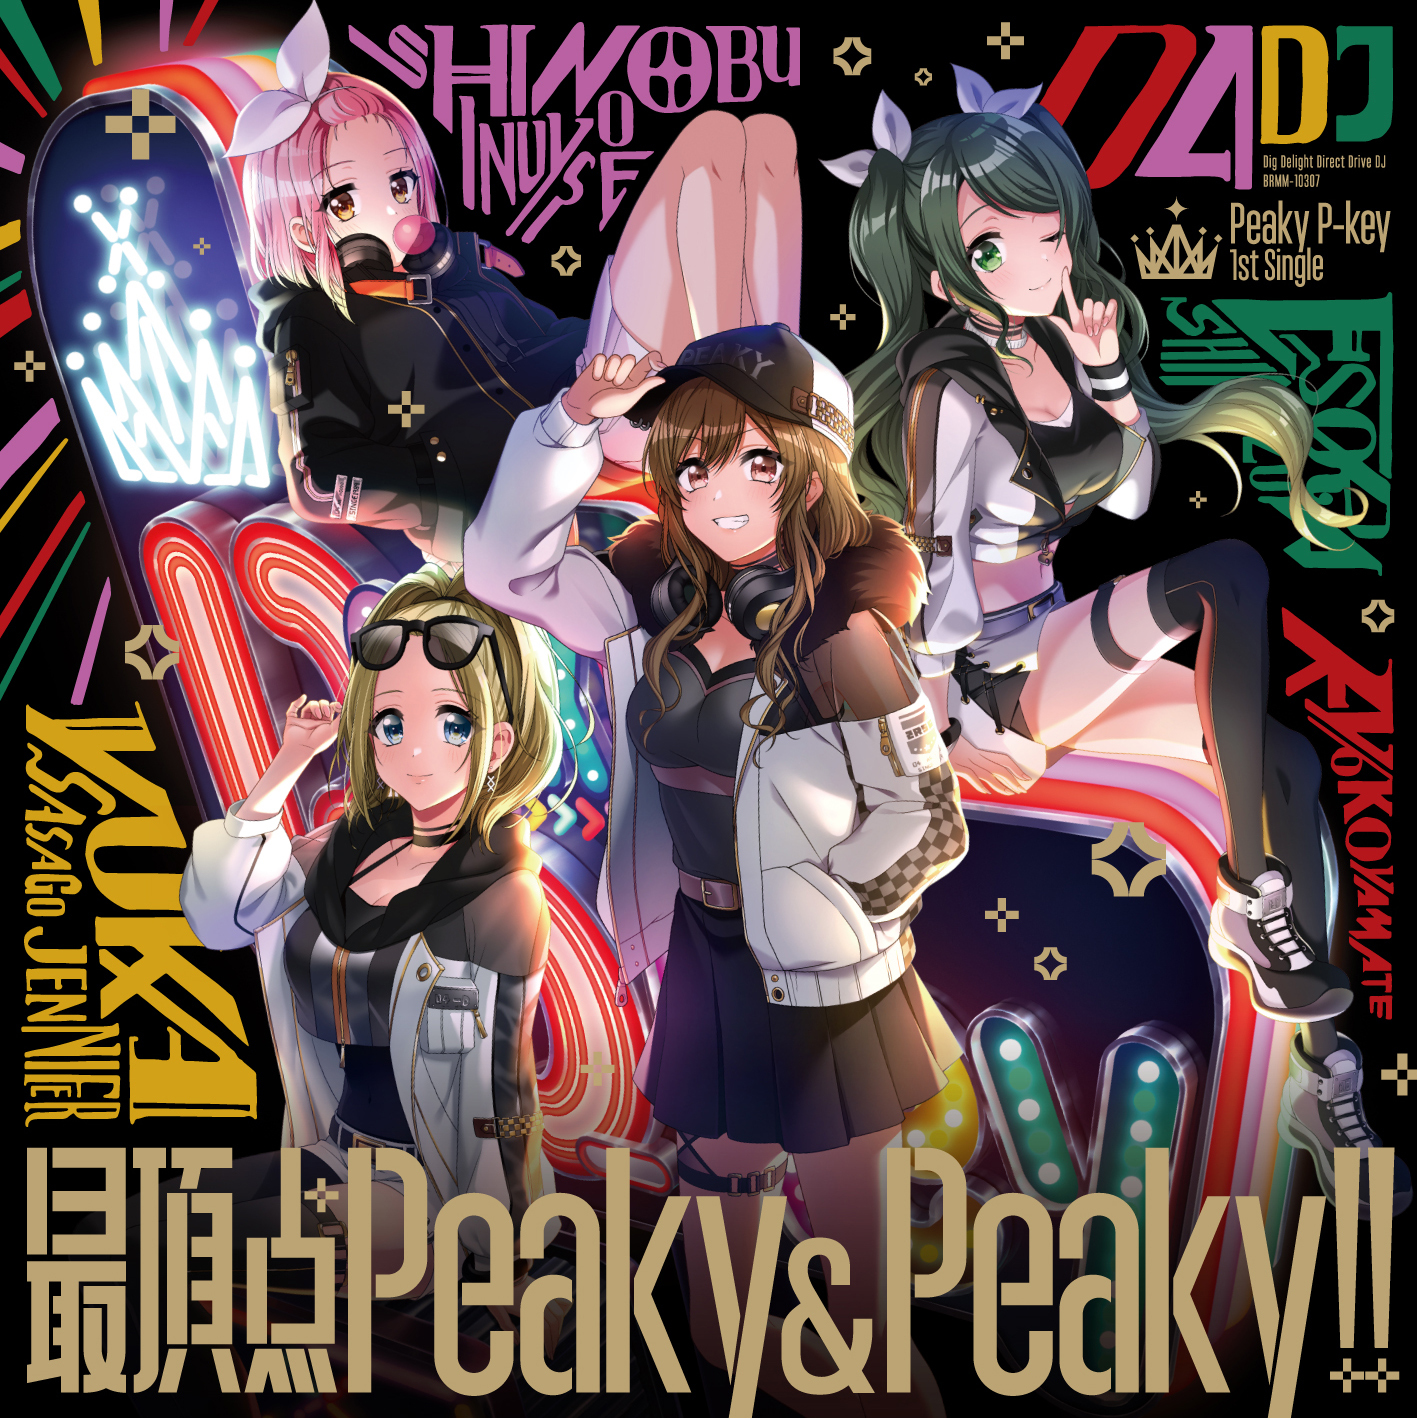 Peak Peaky&Peaky!! (single) | Dig Delight Direct Drive DJ Wiki 